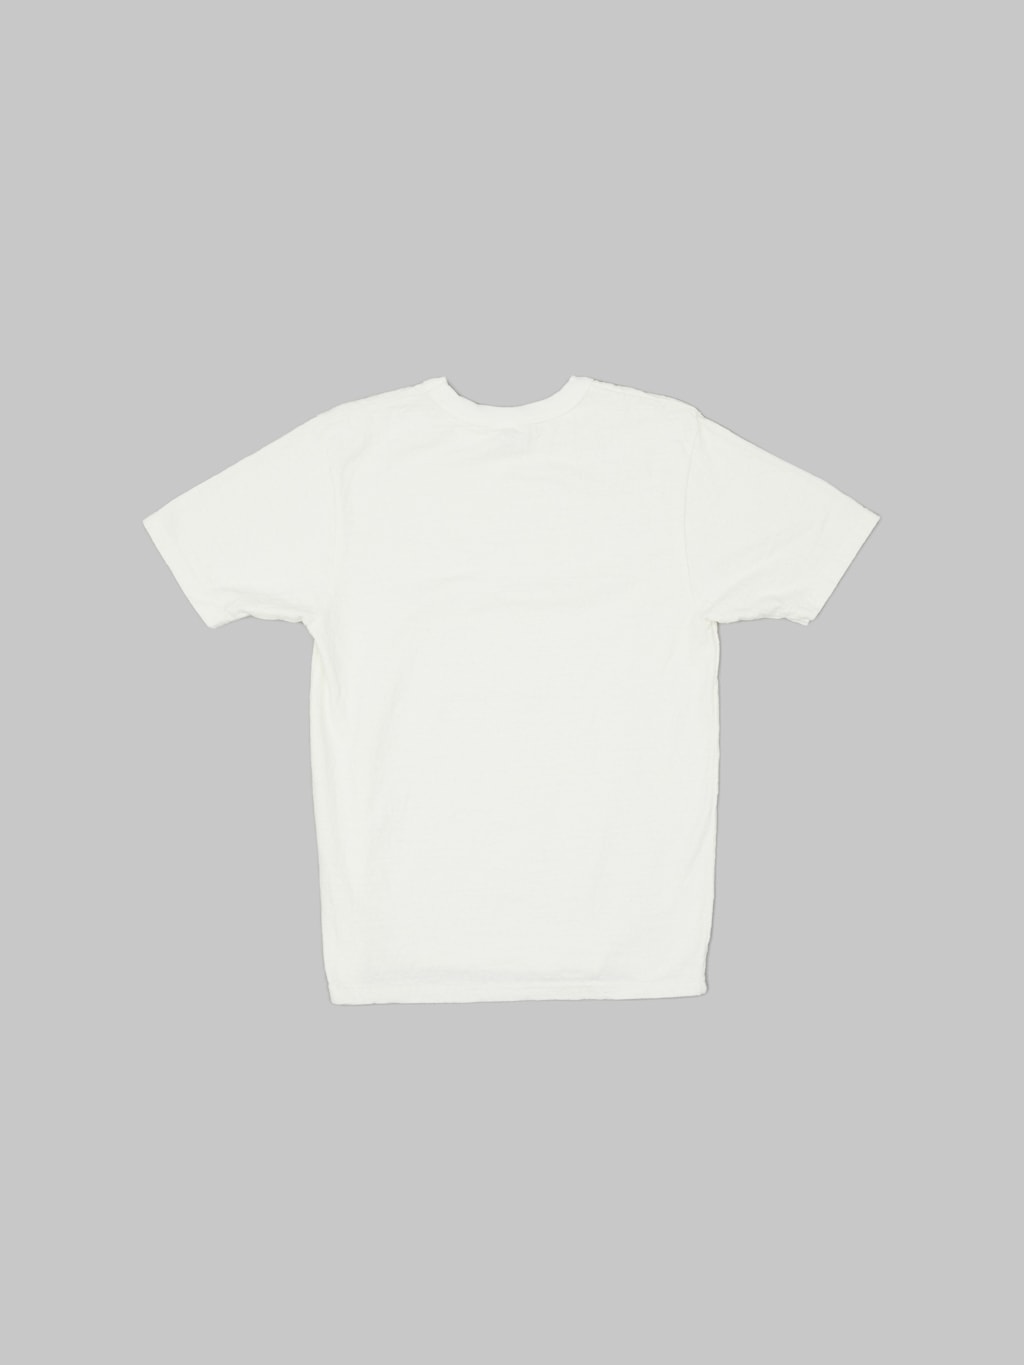 UES No 8 Slub Nep Short Sleeve Tshirt White back slim fit